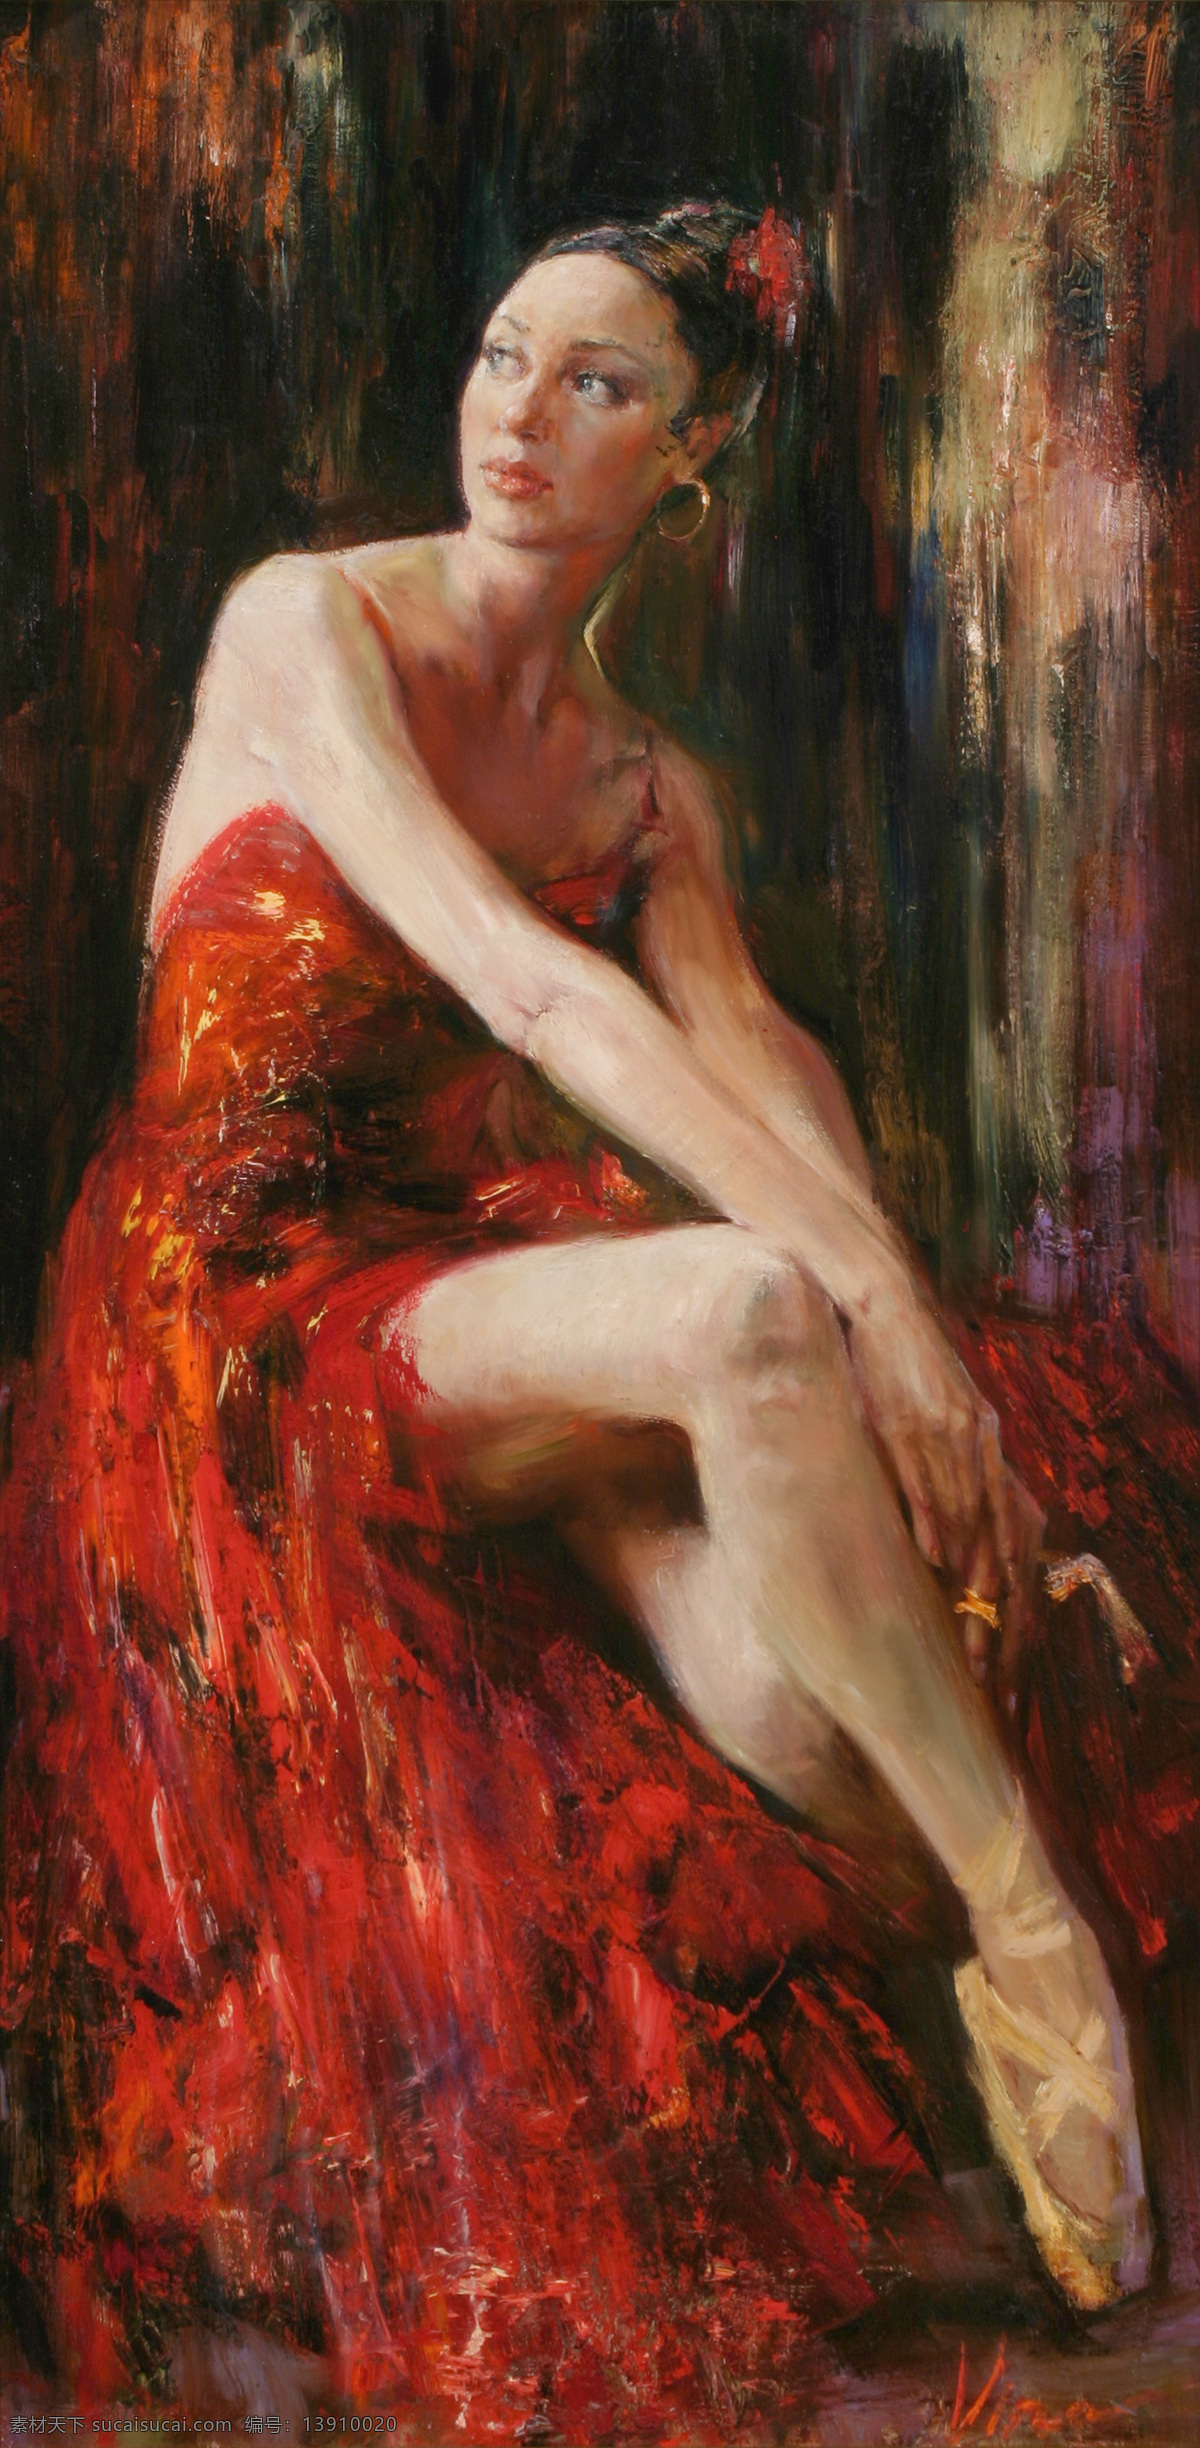 红色 礼服 裙 芭蕾舞 演员 油画 红色礼服裙 芭蕾舞演员 西方美女 名画 艺术 绘画 文化艺术 艺术品 世界名画 书画文字